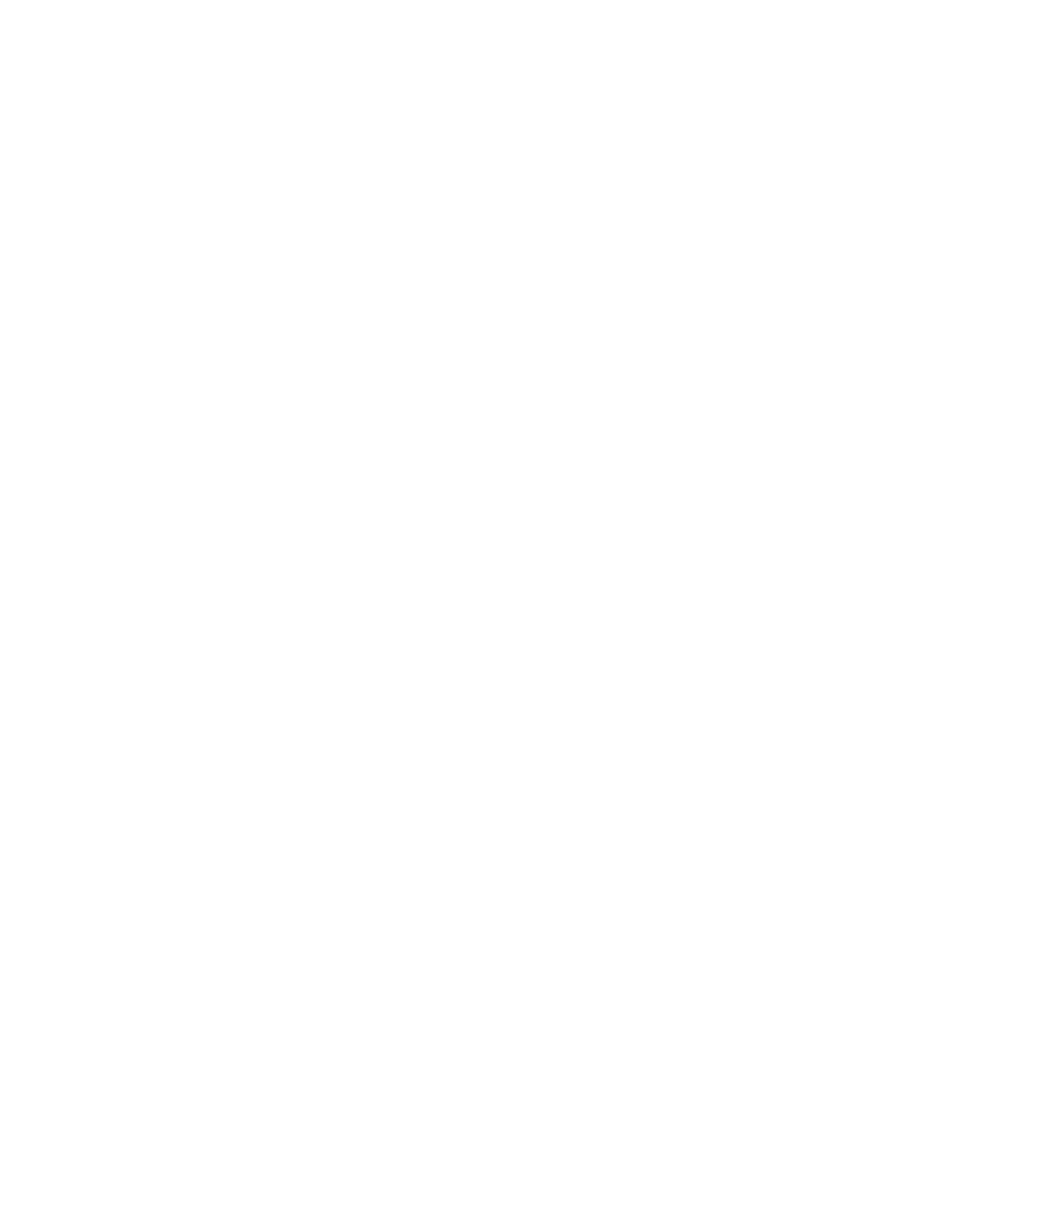 TOAMS Financial